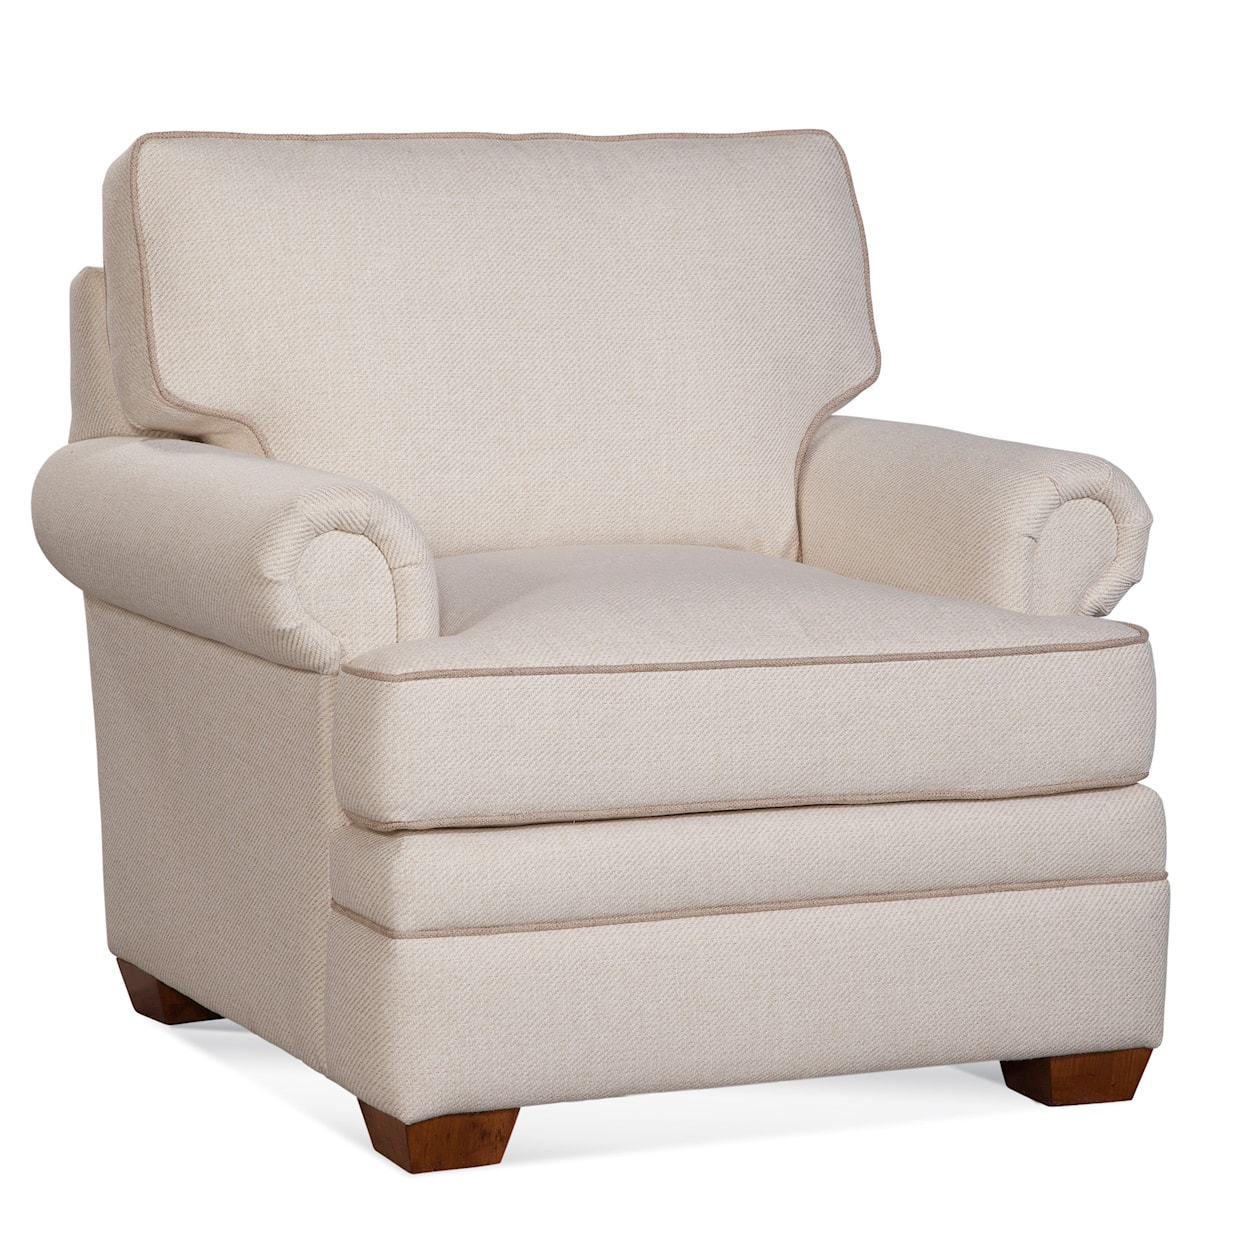 Braxton Culler Bradbury Customizable Arm Chair